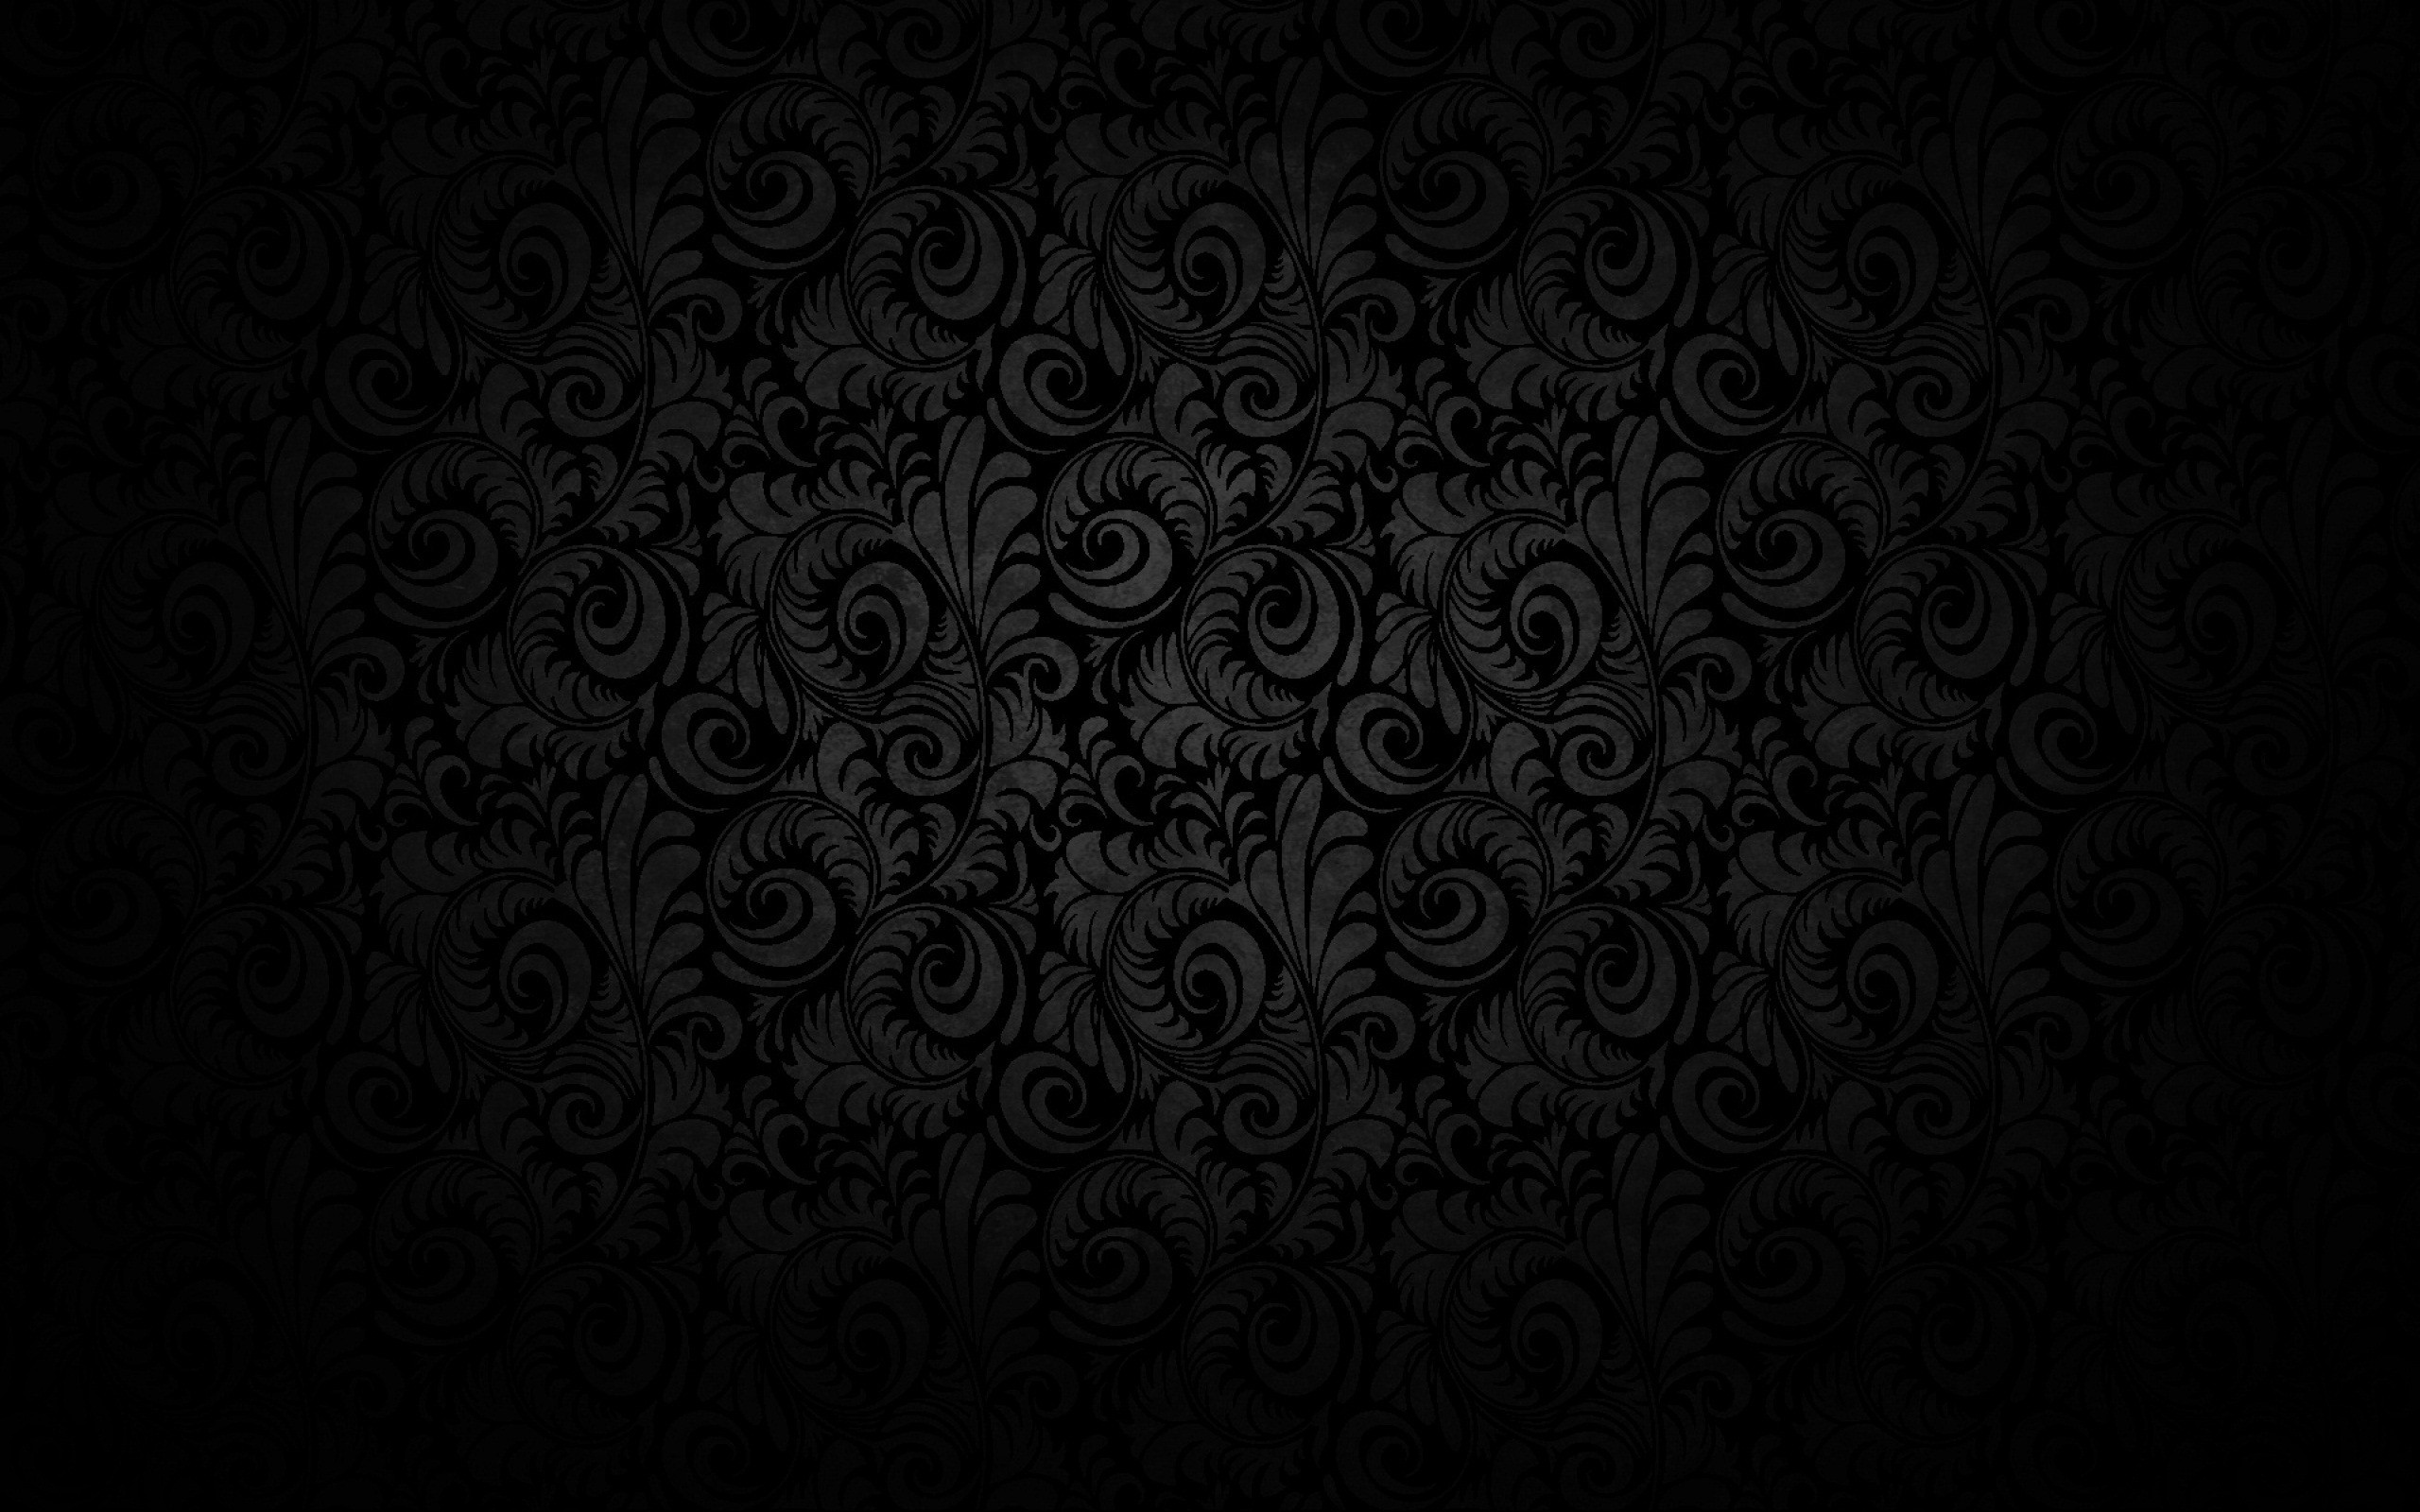 75+] Dark Background Images - WallpaperSafari